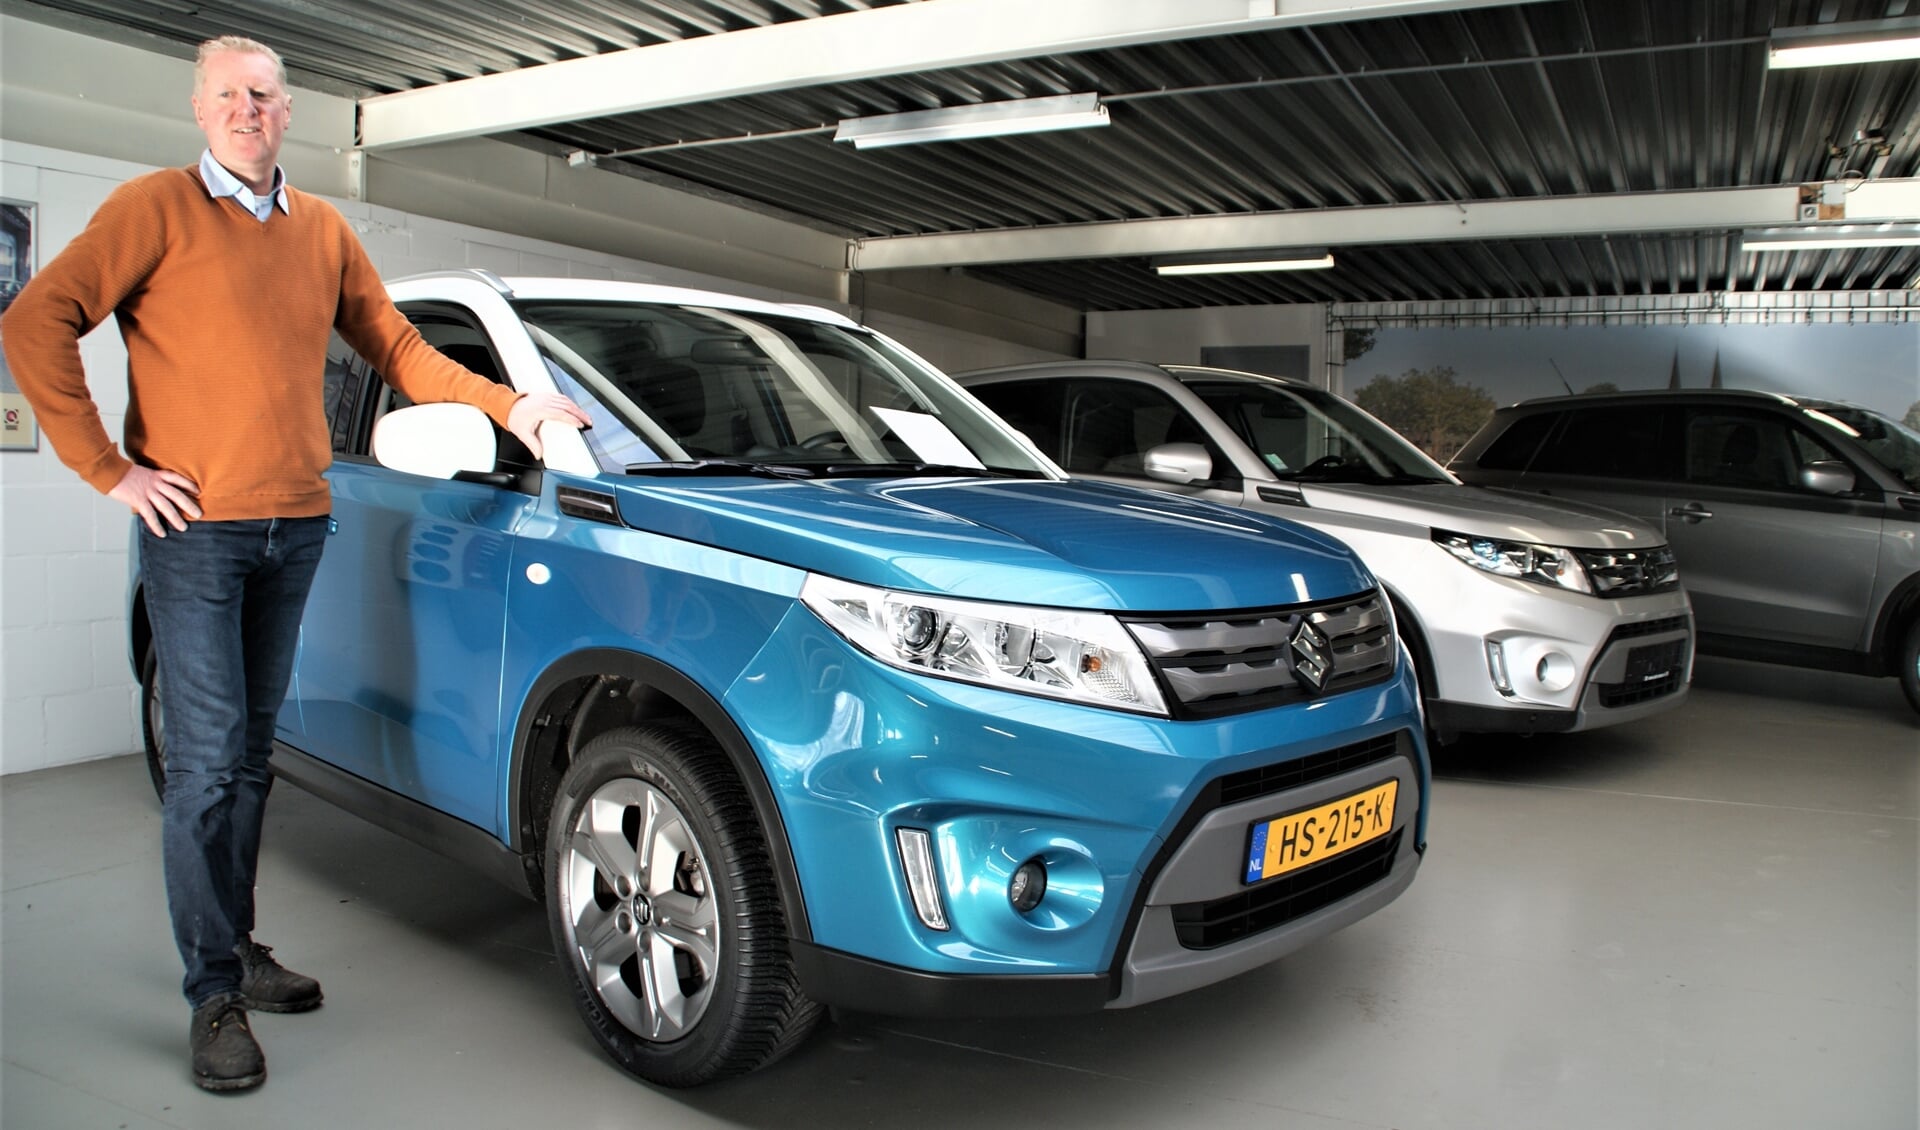 Verkoper Patrick van den Berg op de bovenafdeling van zijn bedrijf Auto Nassau, officieel Suzuki Service Dealer.